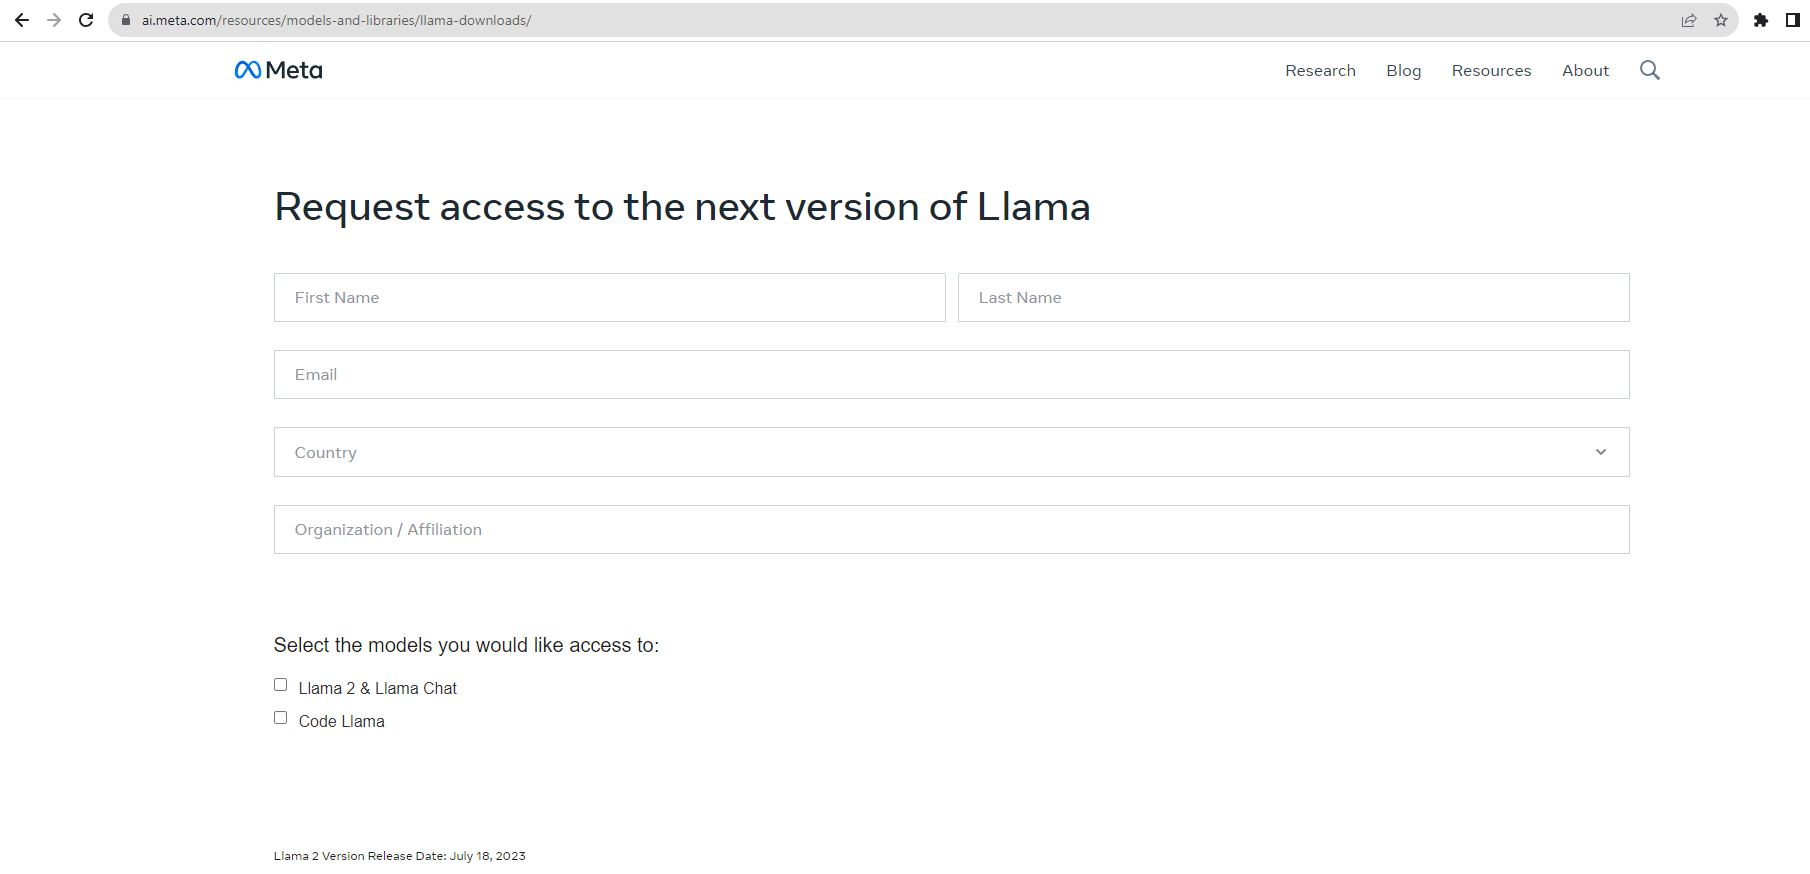 Llama2_Download_Request_Form